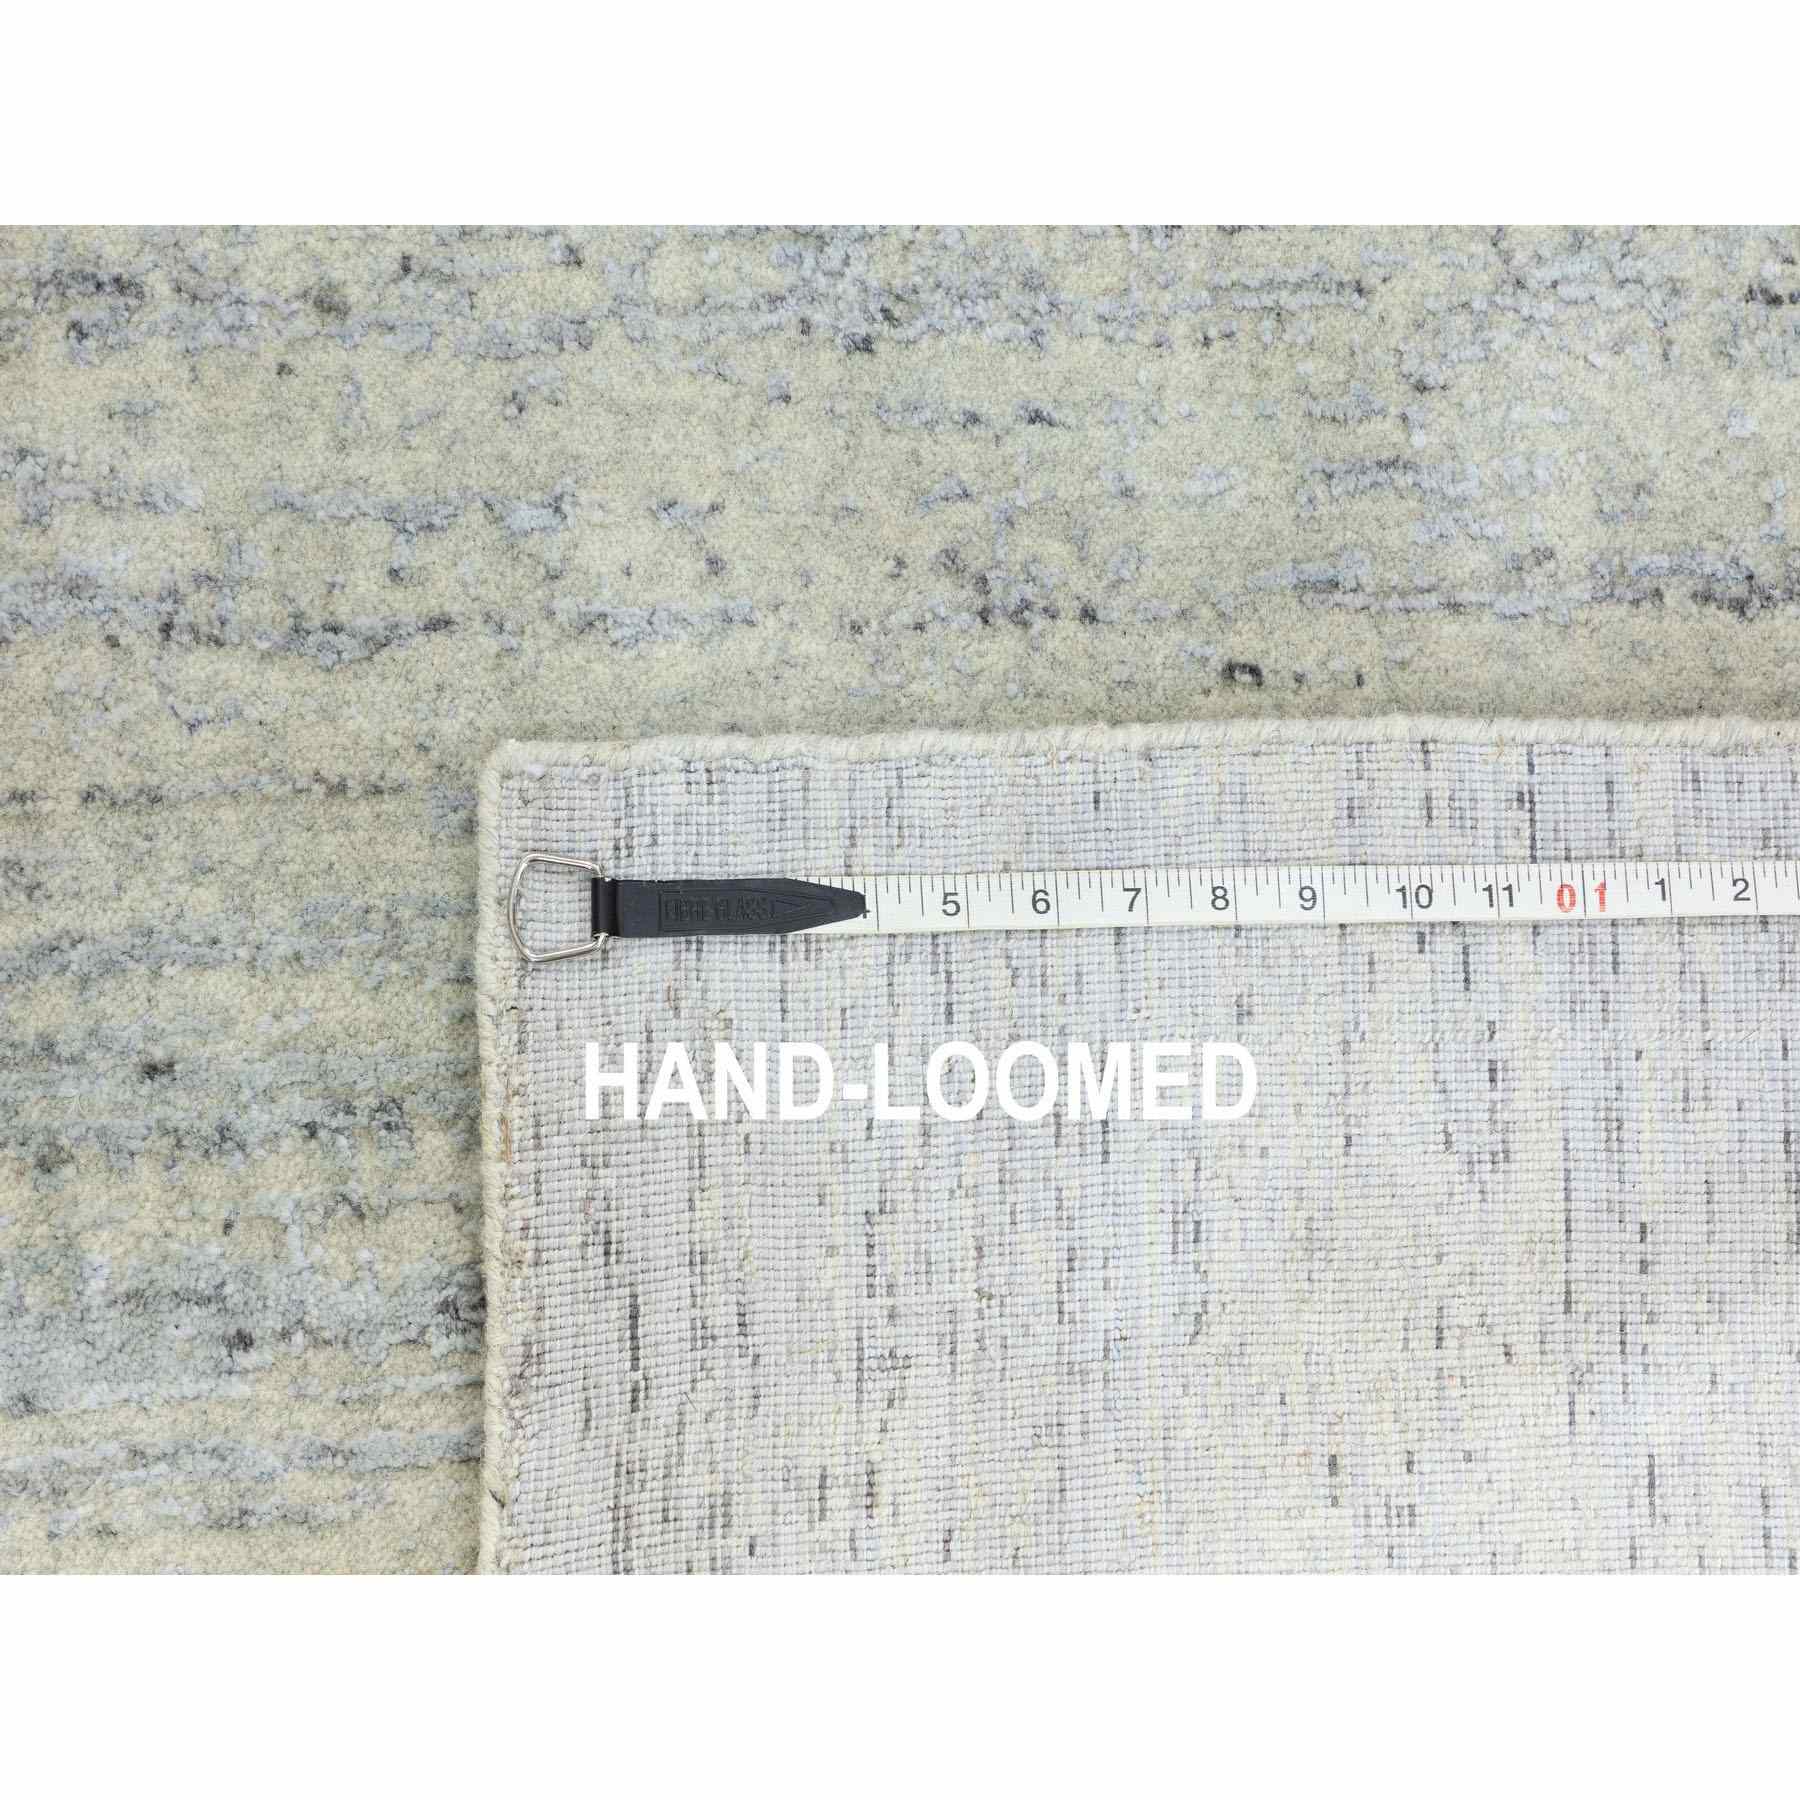 Hand-Loomed-Hand-Loomed-Rug-310280